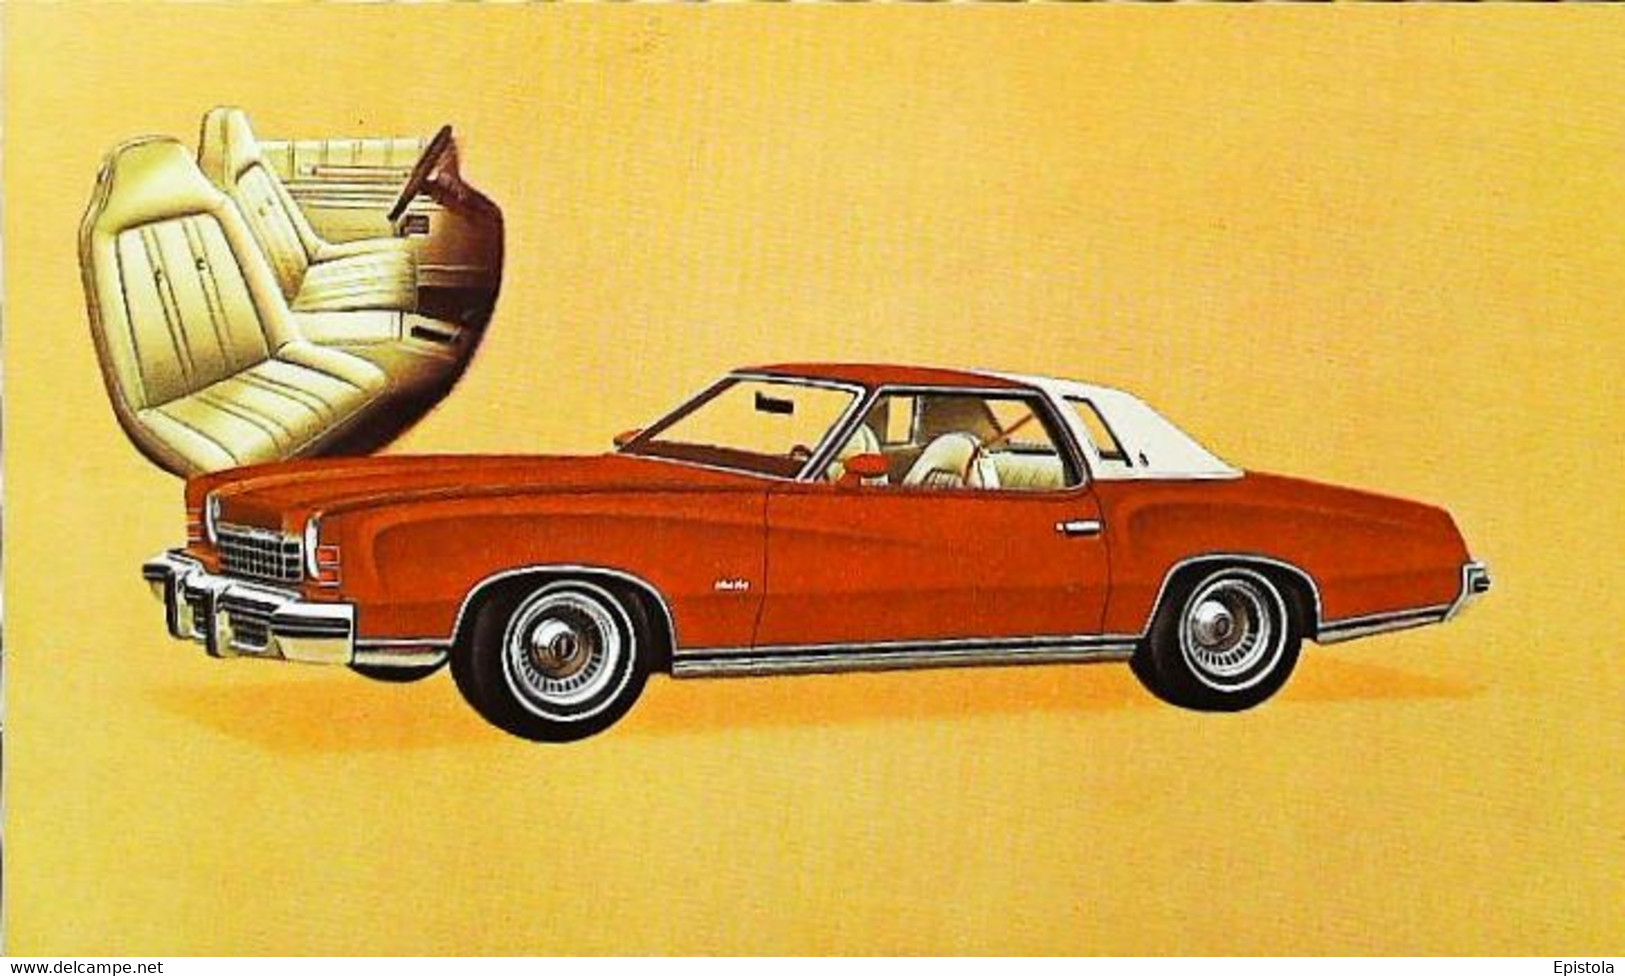 ► CHEVROLET Monte-Carlo Landau  1974  - Publicité Automobile Chevrolet  (Litho. U.S.A.) - American Roadside